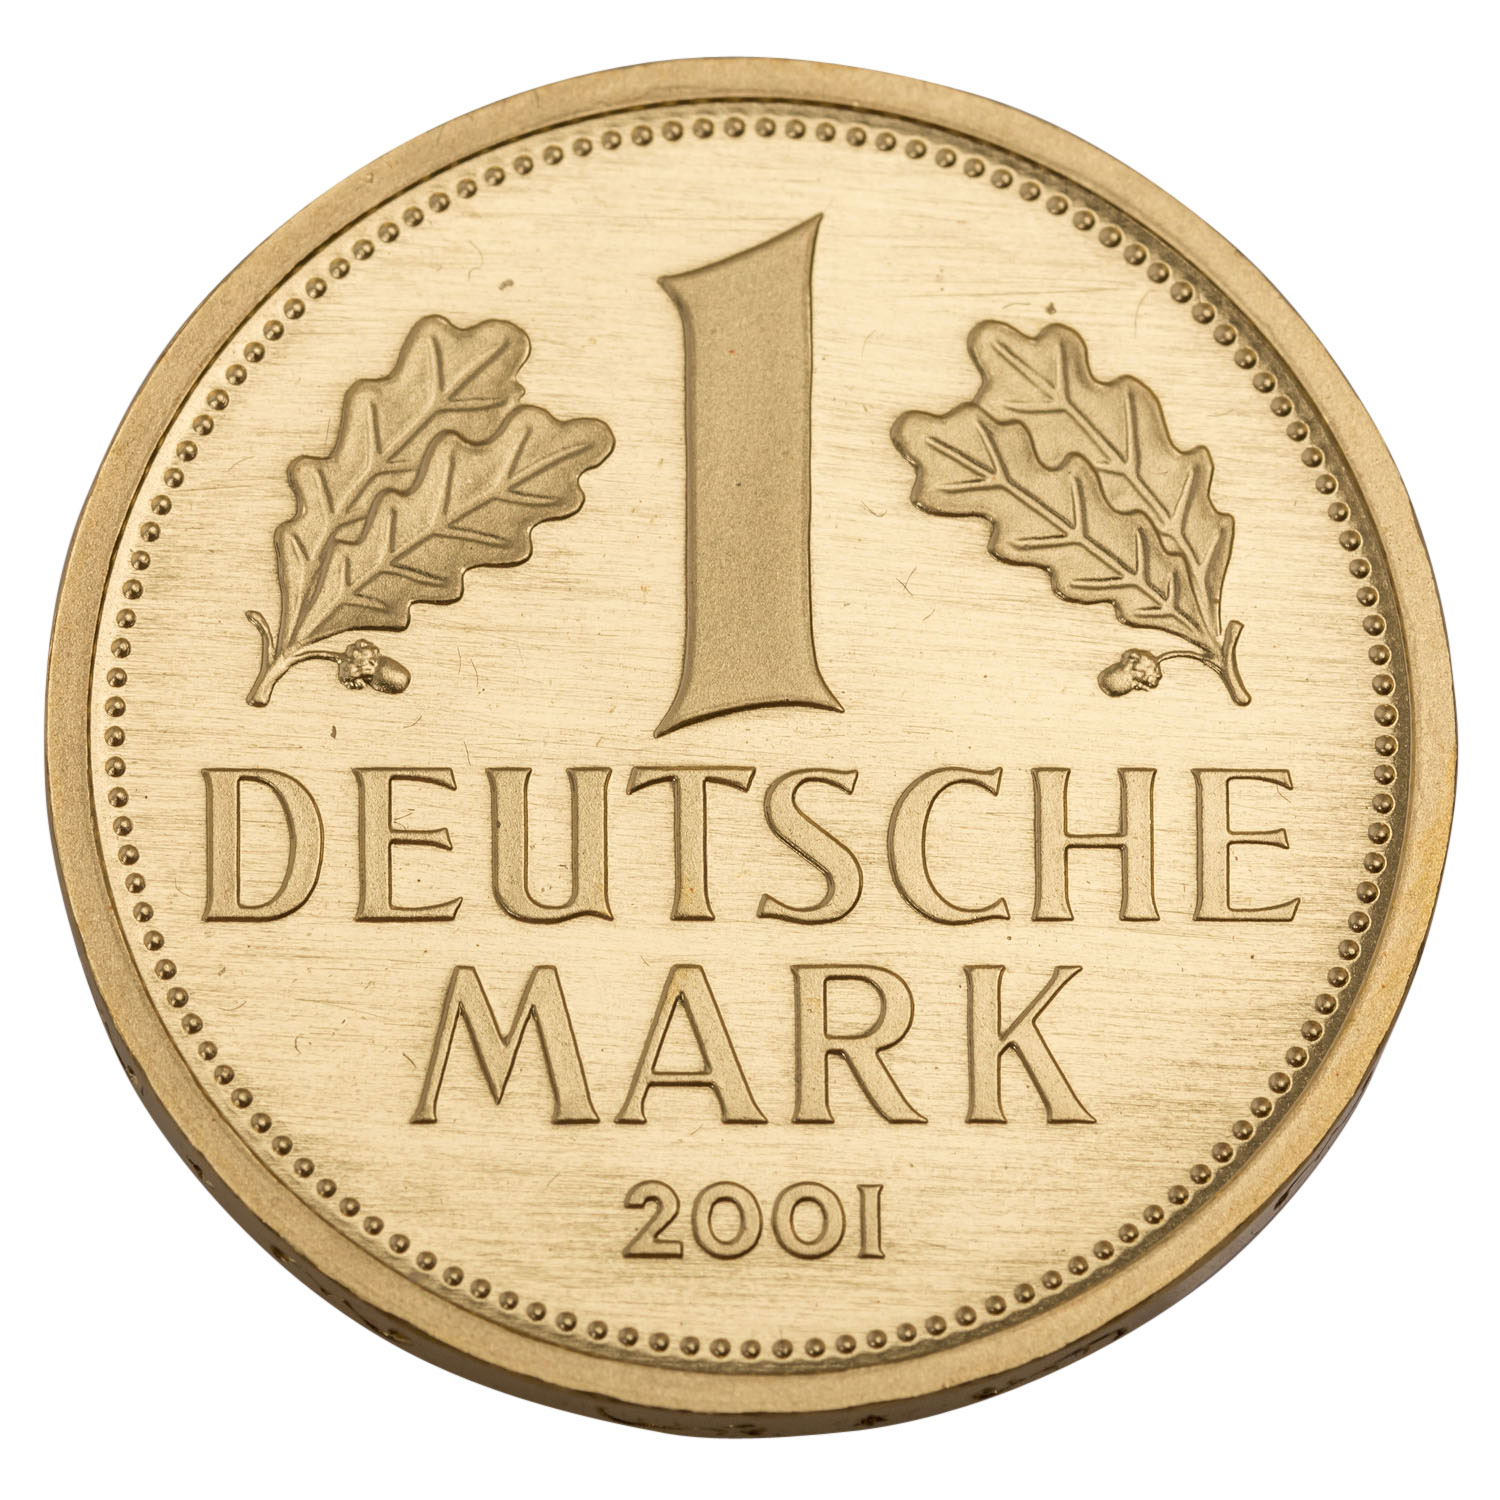 BRD/GOLD - 1 Deutsche Mark in Gold